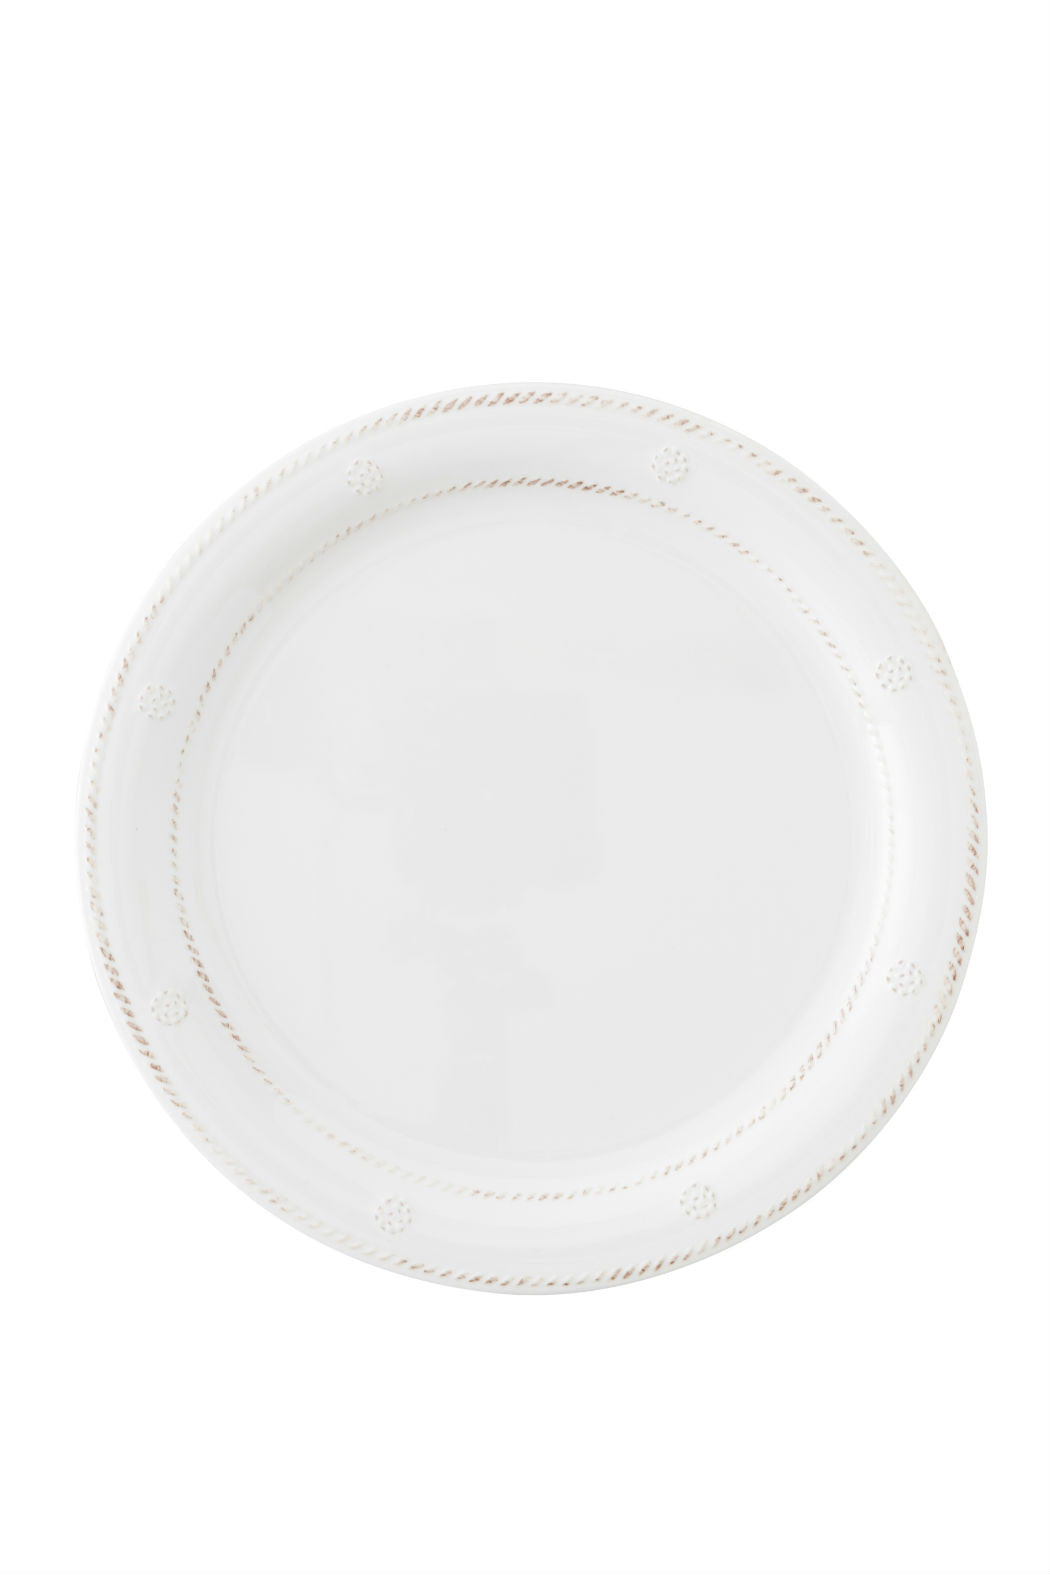 Juliska Berry & Thread Dinner Plate in Melamine Set of 8